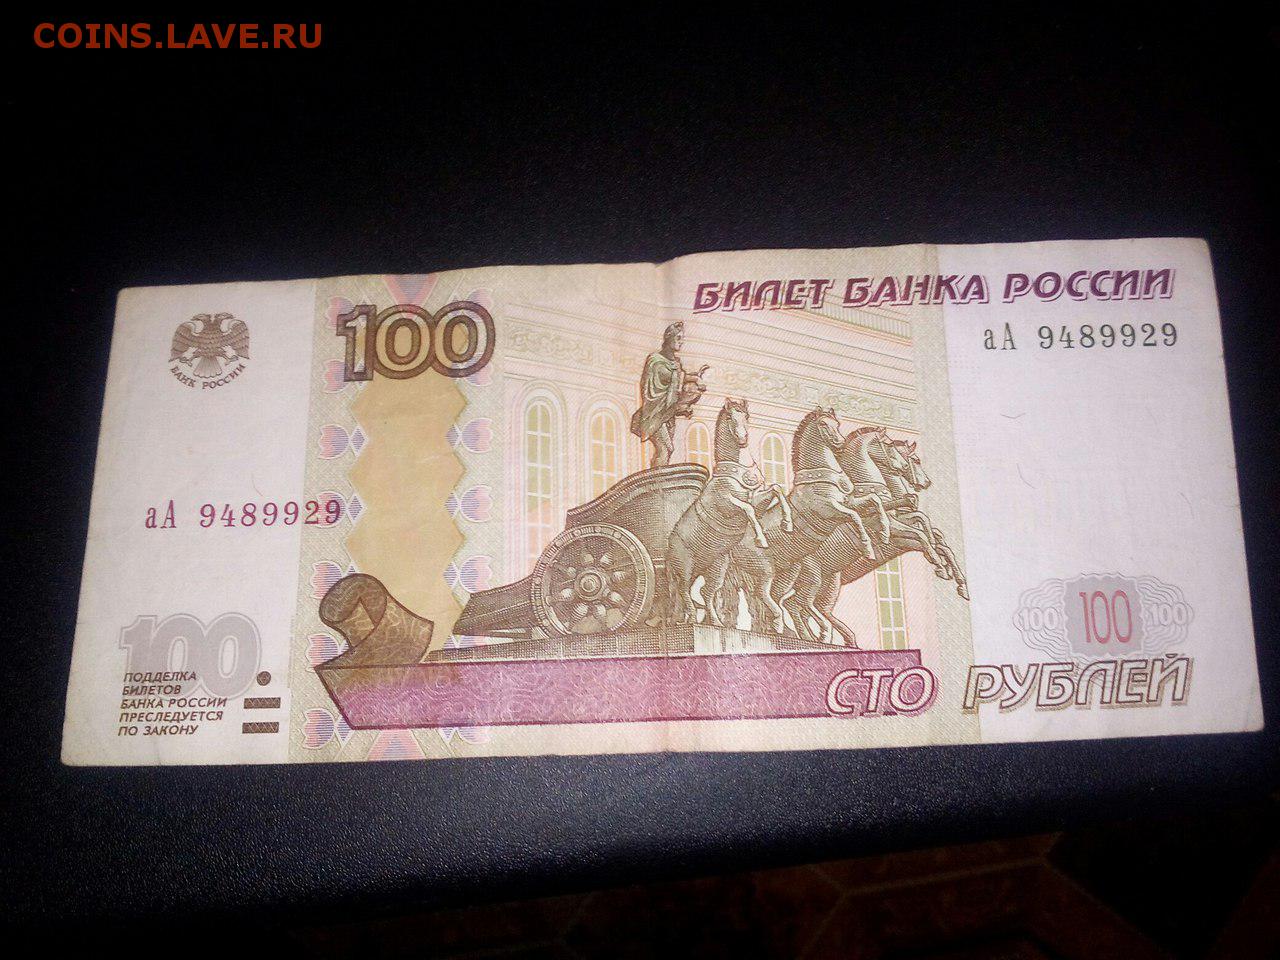 Четыре сто рублей. СТО рублей. 100 Рублей. Купюра 100 рублей. 100 Рублей 1997 года.